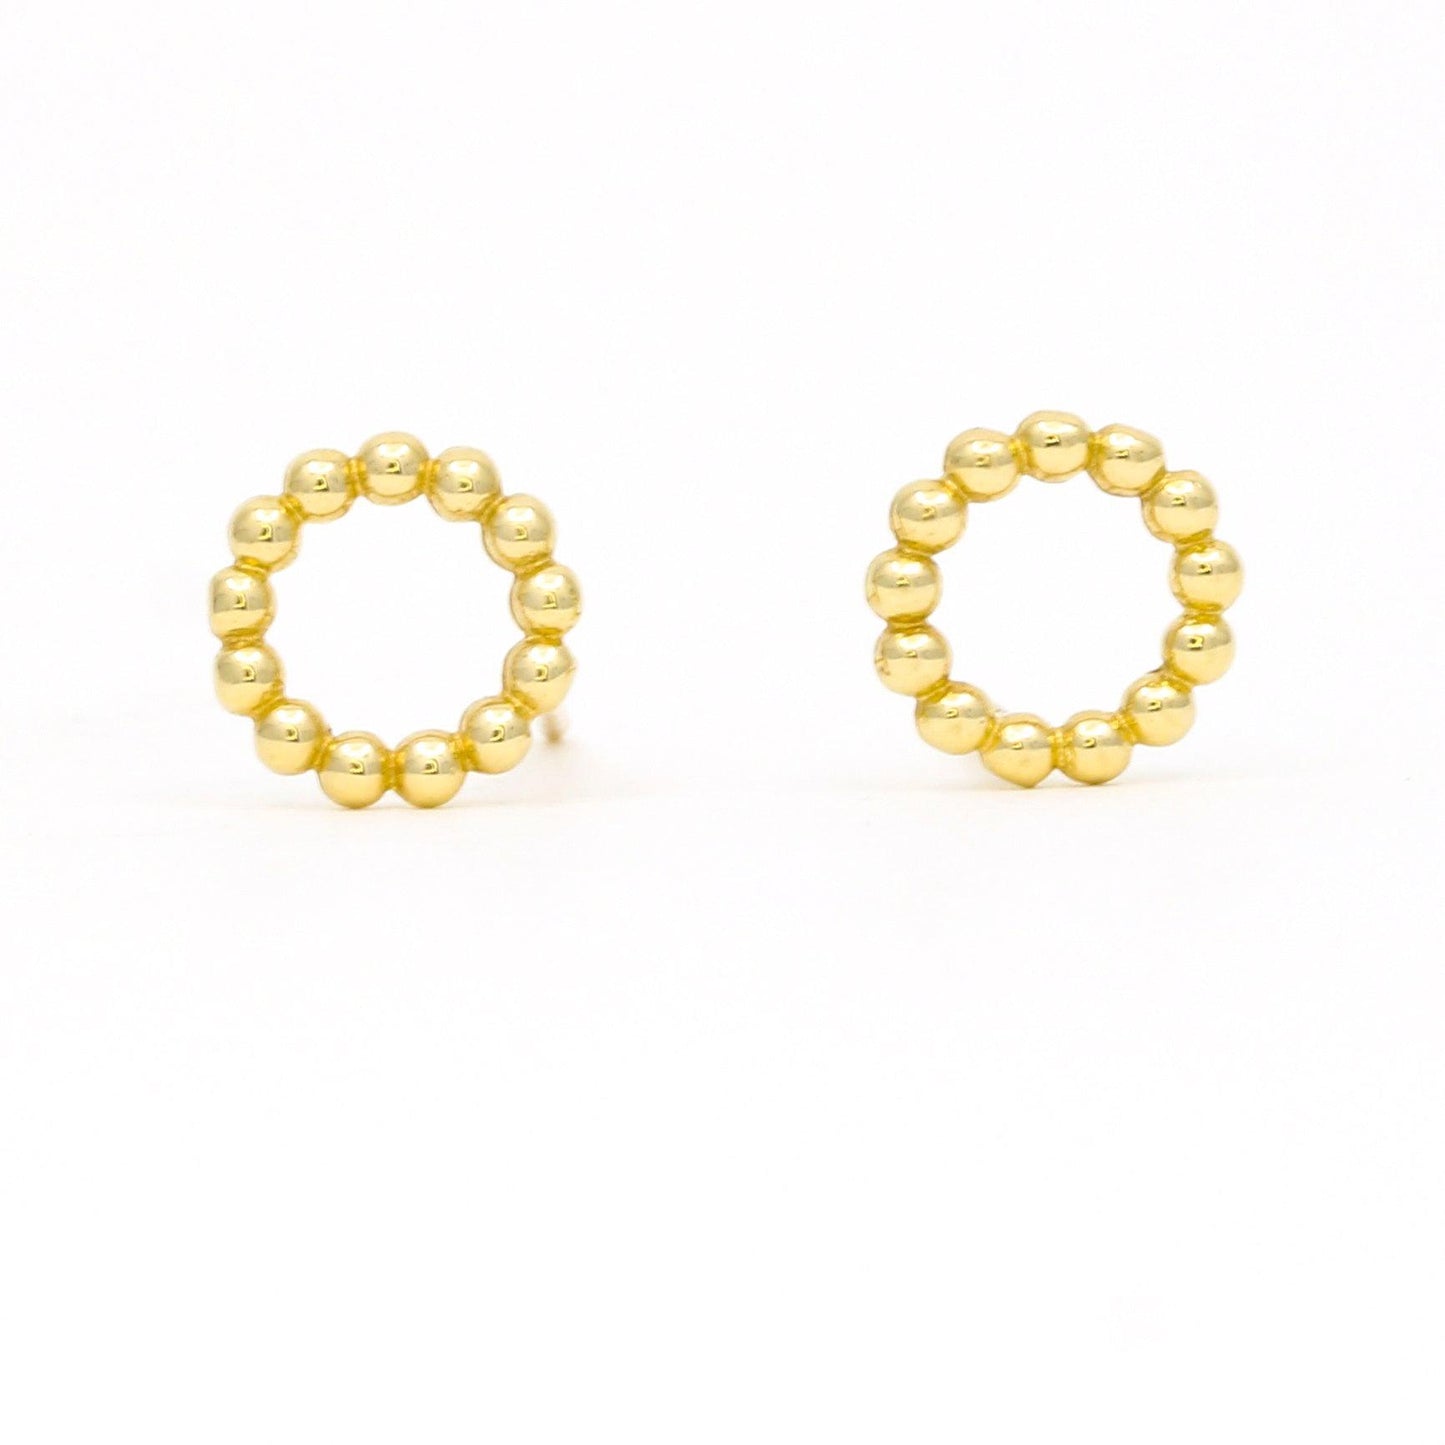 Women's Minimalist Beaded Open Circle Stud Earrings in 14k Yellow Gold - 31 Jewels Inc.